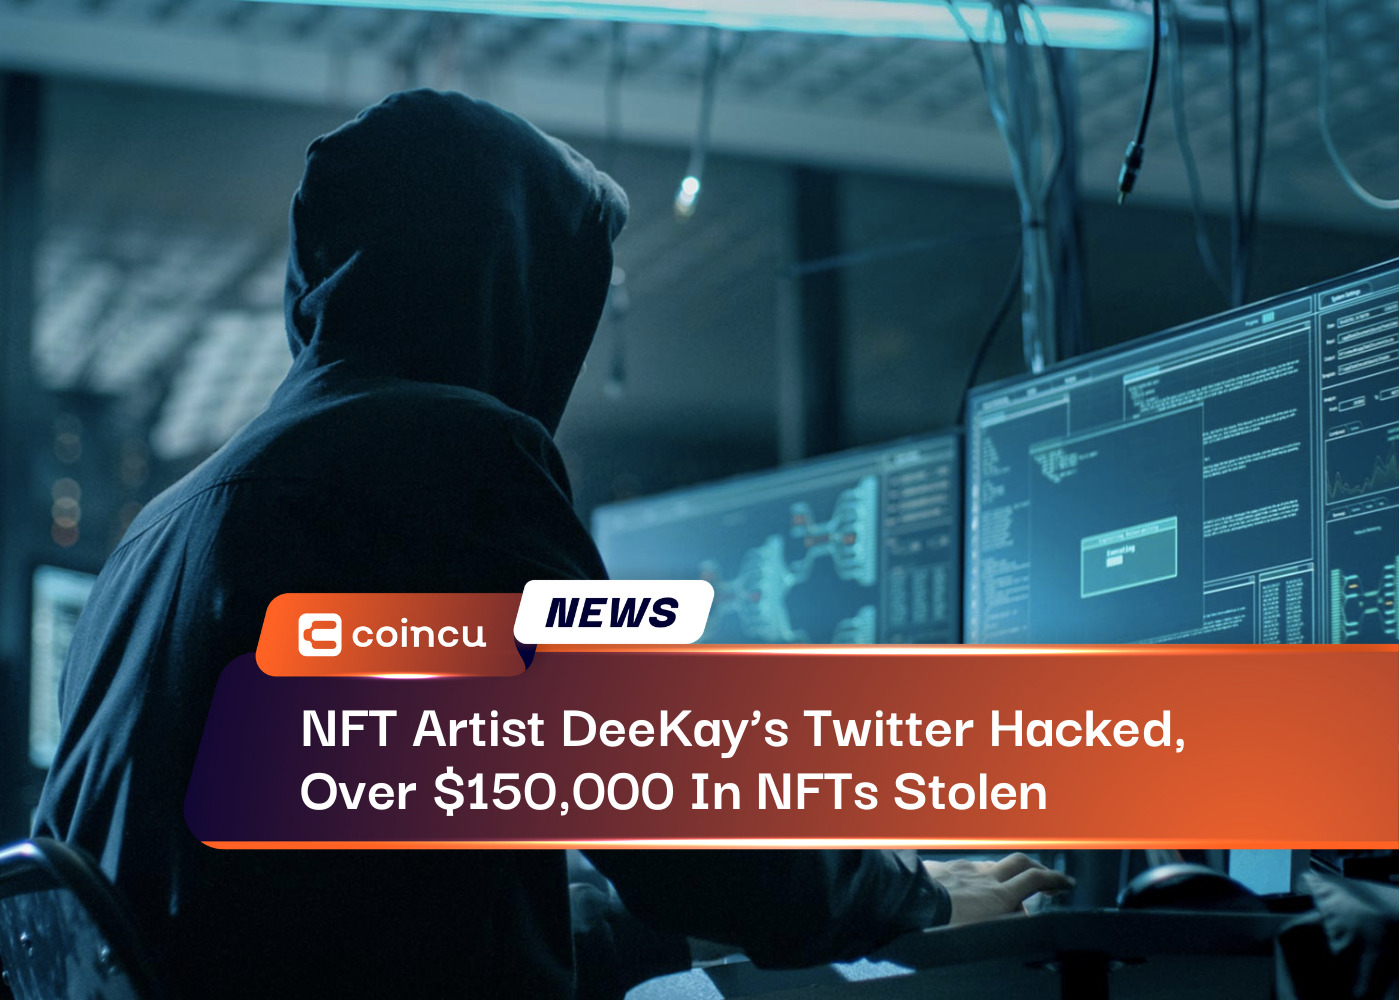 NFT Artist DeeKay’s Twitter Hacked, Over $150,000 In NFTs Stolen